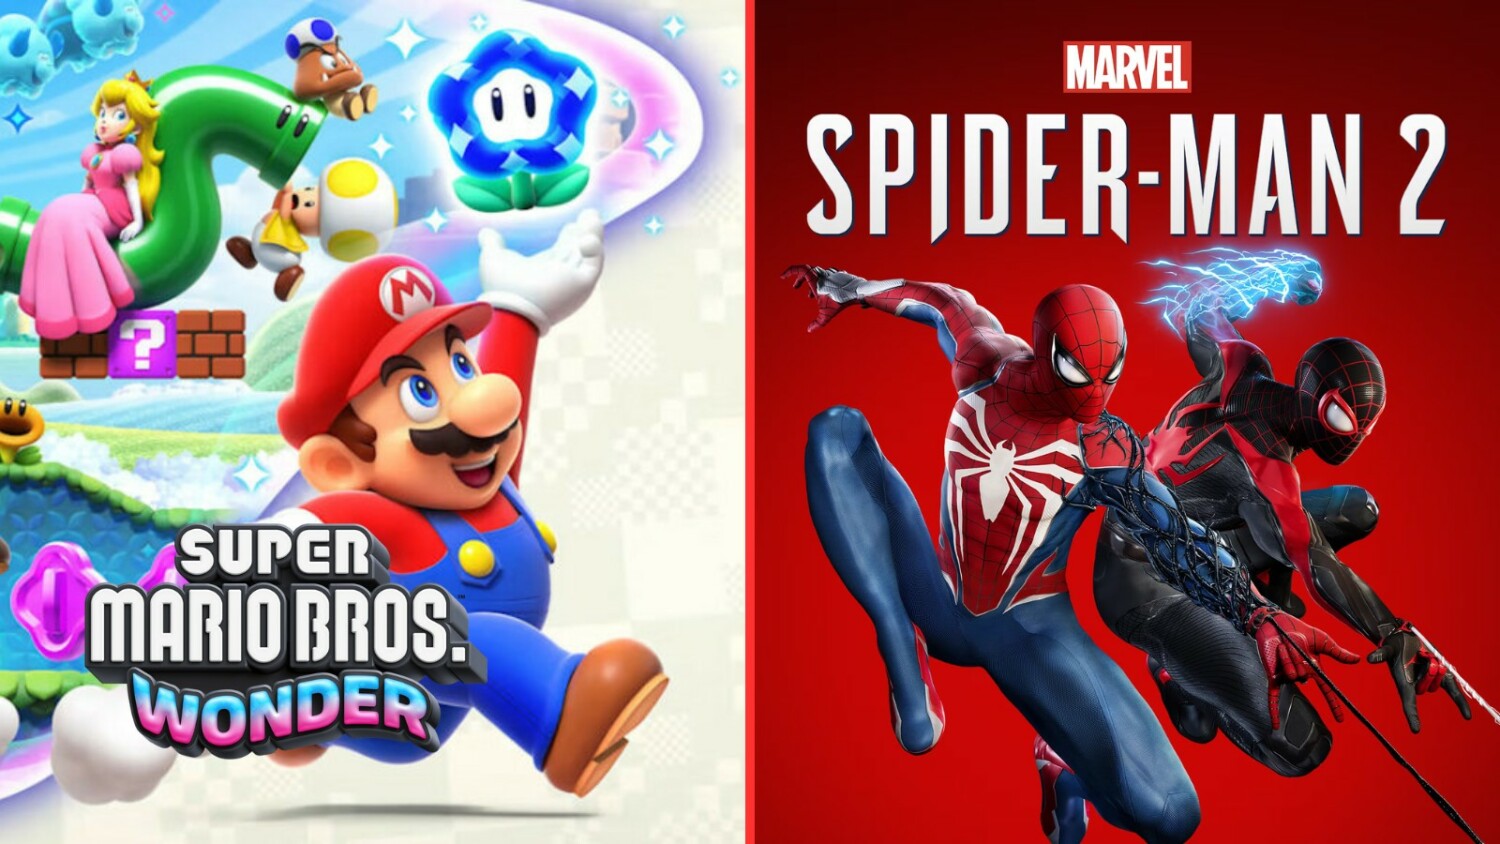 Spider-Man 2 Super Mario Bros. Wonder: Marvel's Spider-Man 2